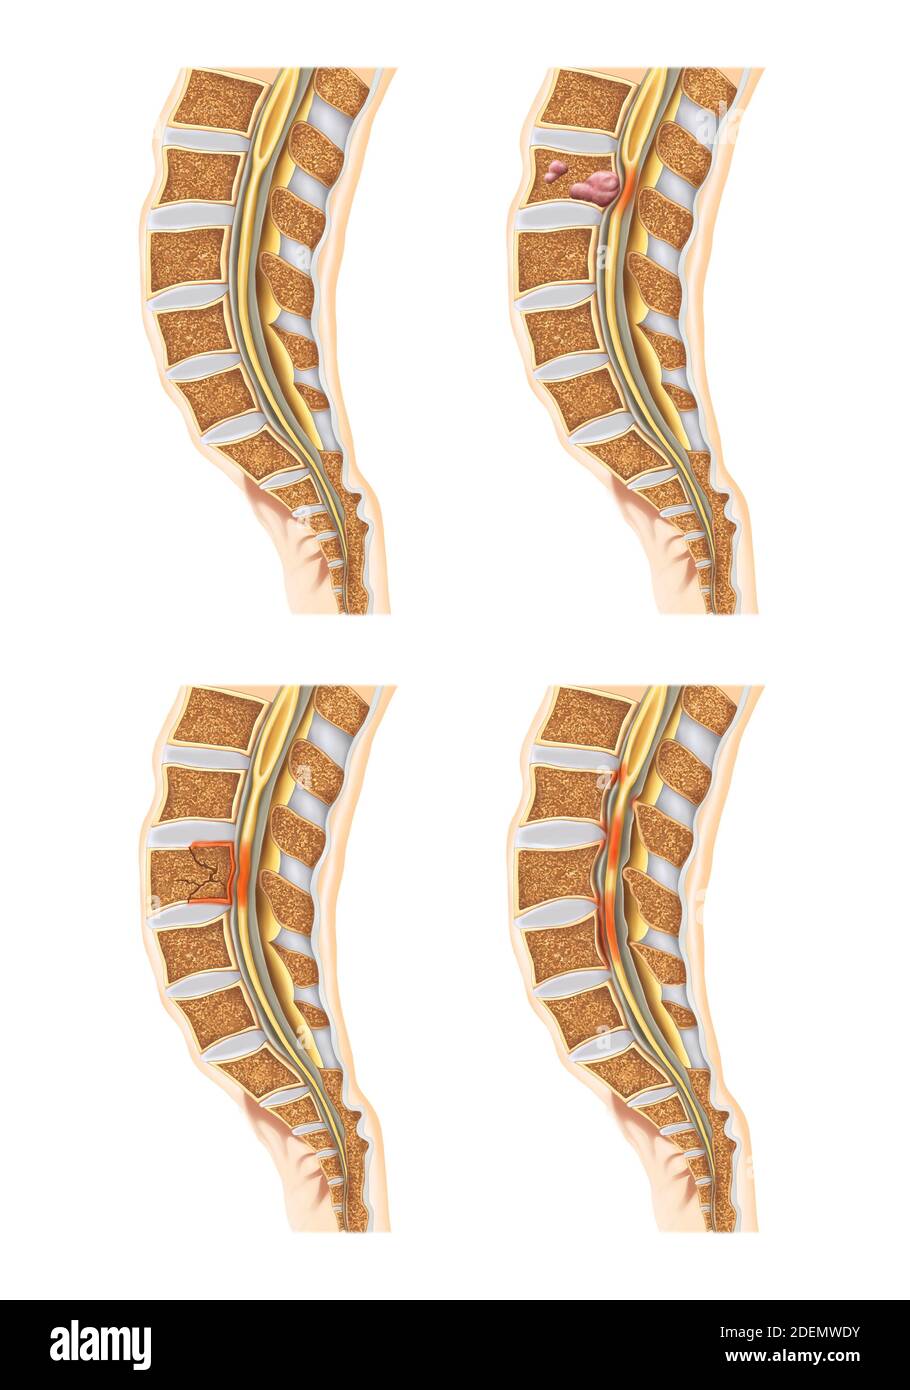 spinal and lumbar disc anatomy Stock Photo